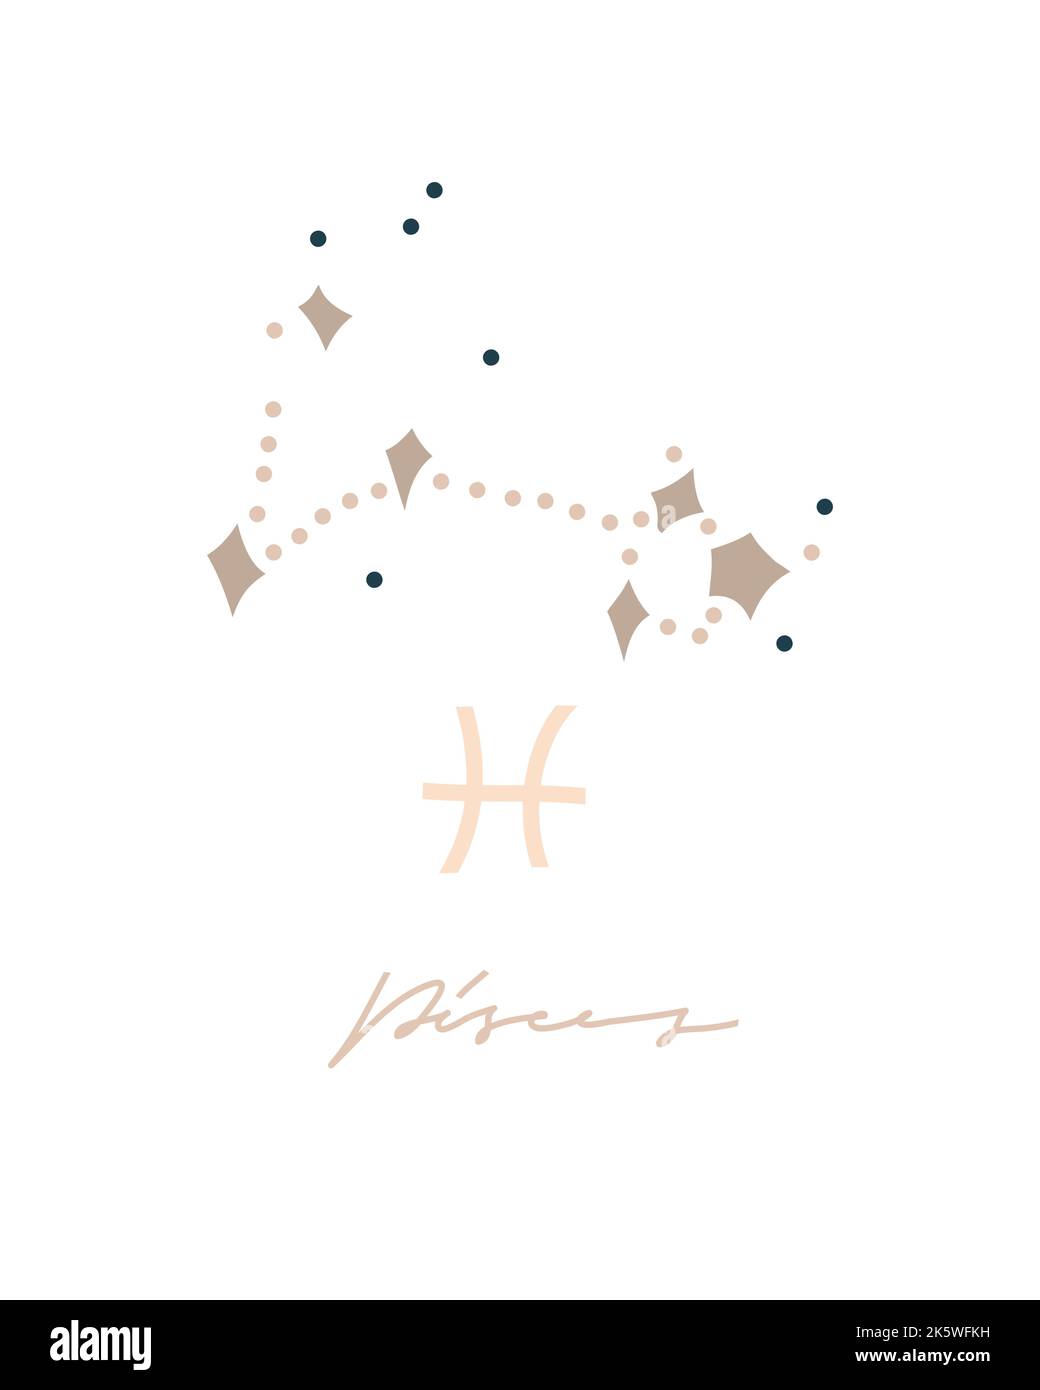 Dessin à la main vecteur résumé stock graphique astrologie simple Astro illustration constellation collection moderne artistique contemporain modèle d'impression Illustration de Vecteur